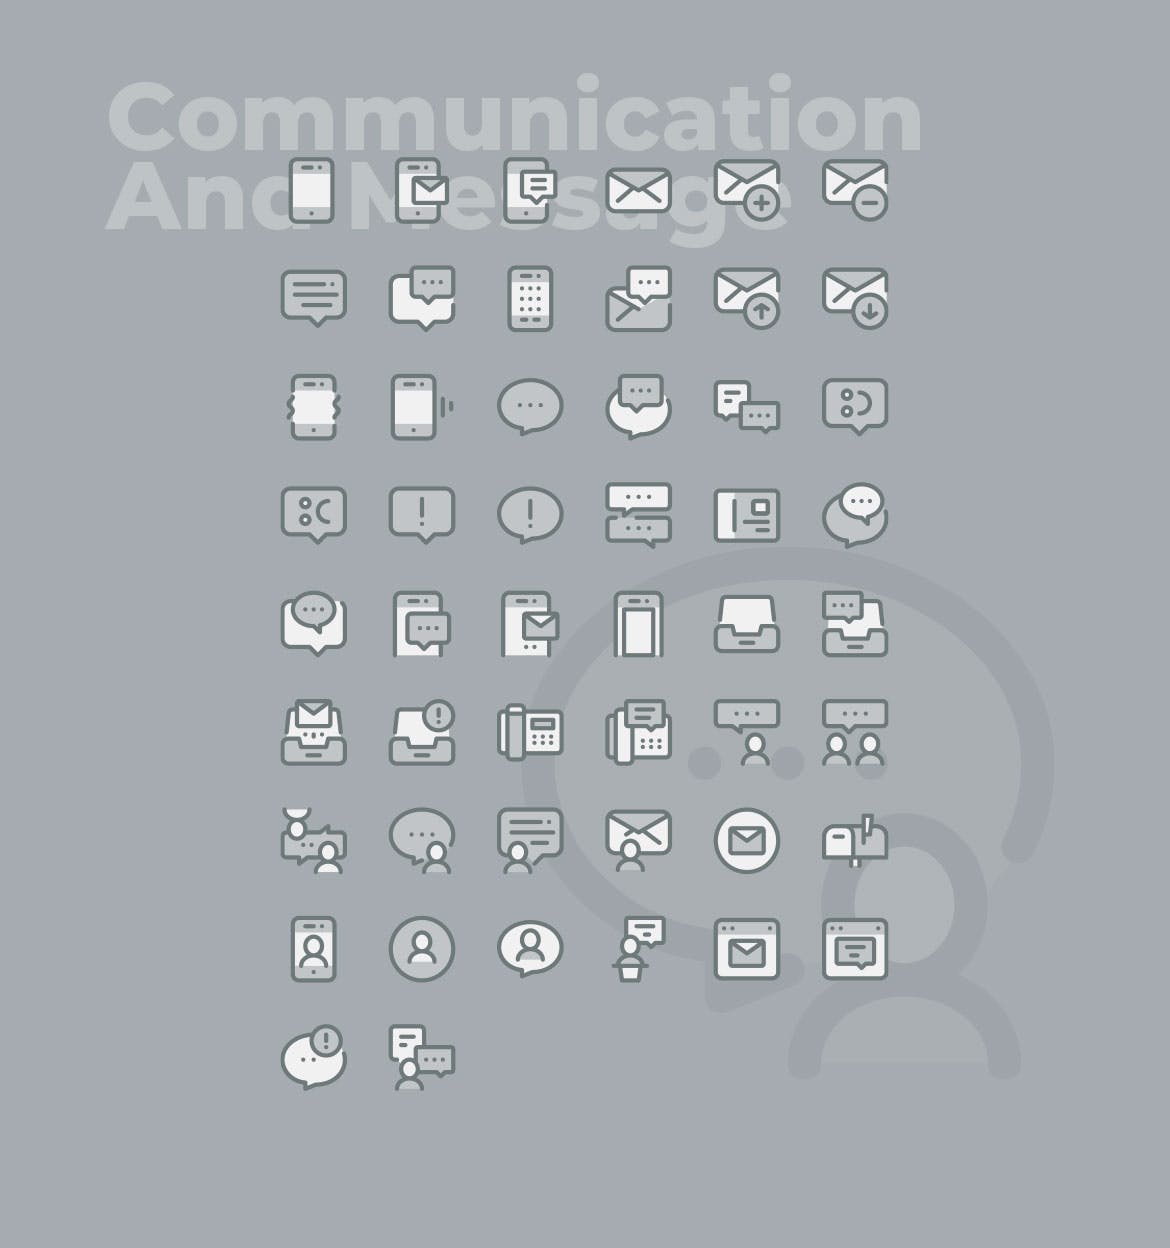 50枚社交通讯主题双色调矢量非凡图库精选图标 50 Communication Icons  –  Two Tone Style插图(1)